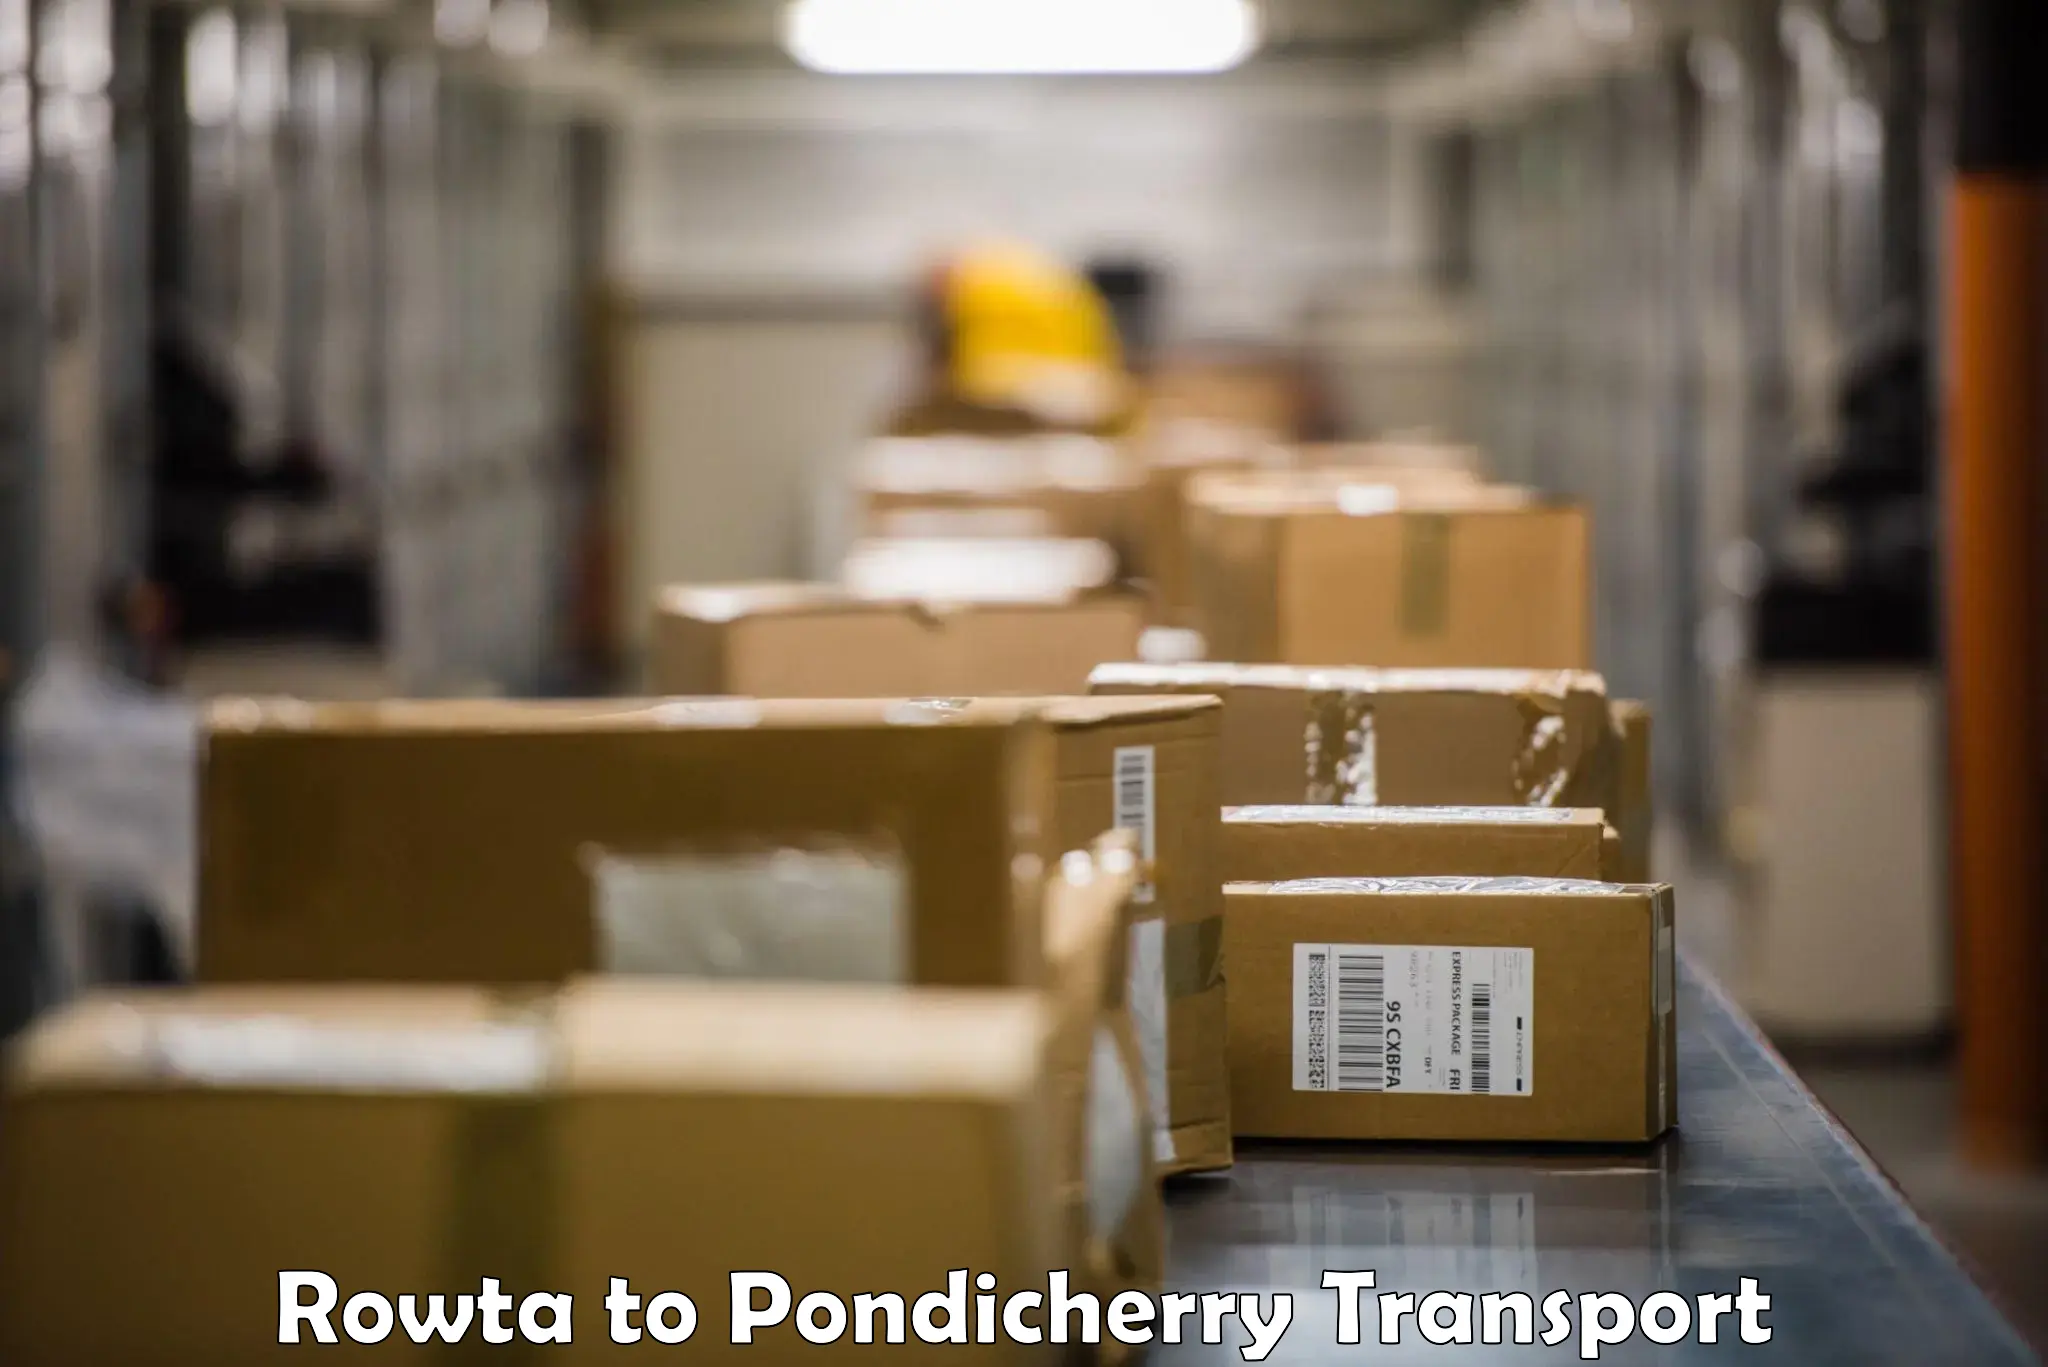 Online transport service Rowta to Pondicherry